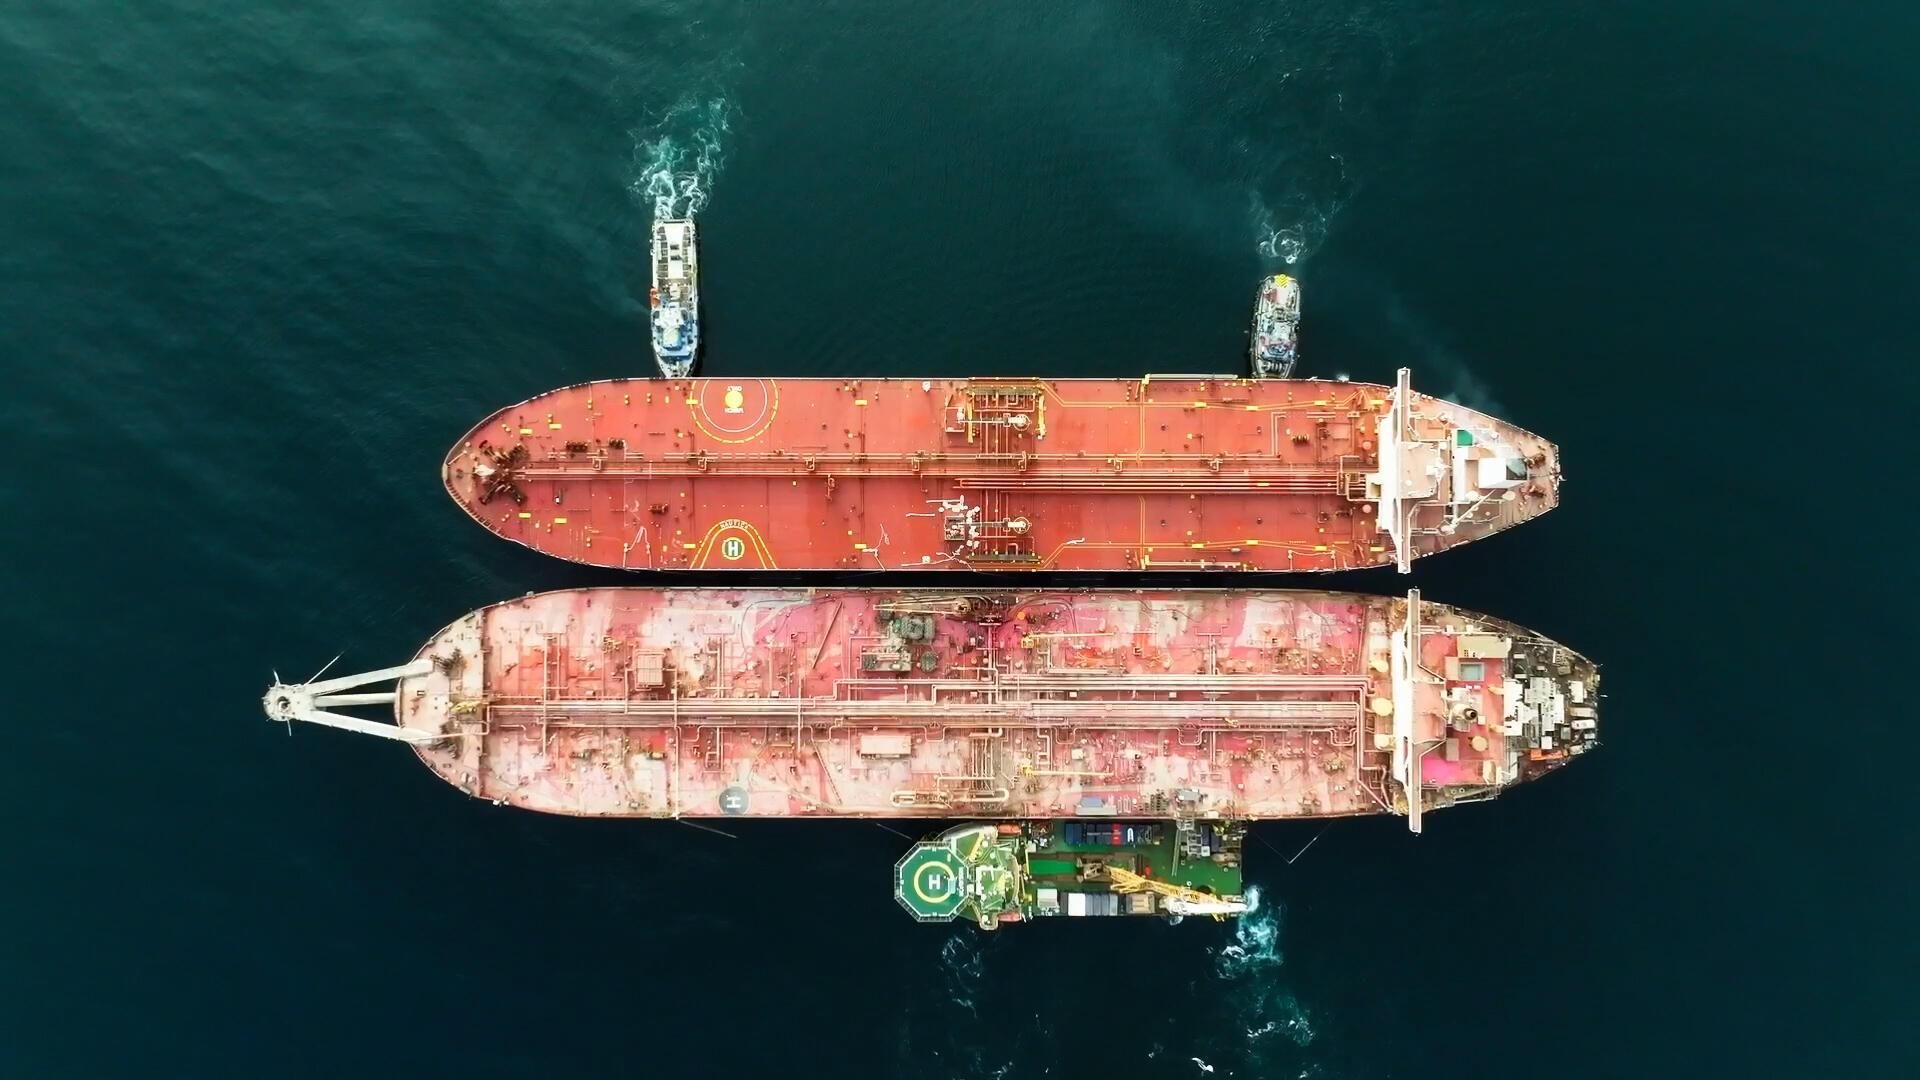 UN averts massive Red Sea oil spill - UN averts massive Red Sea oil spill